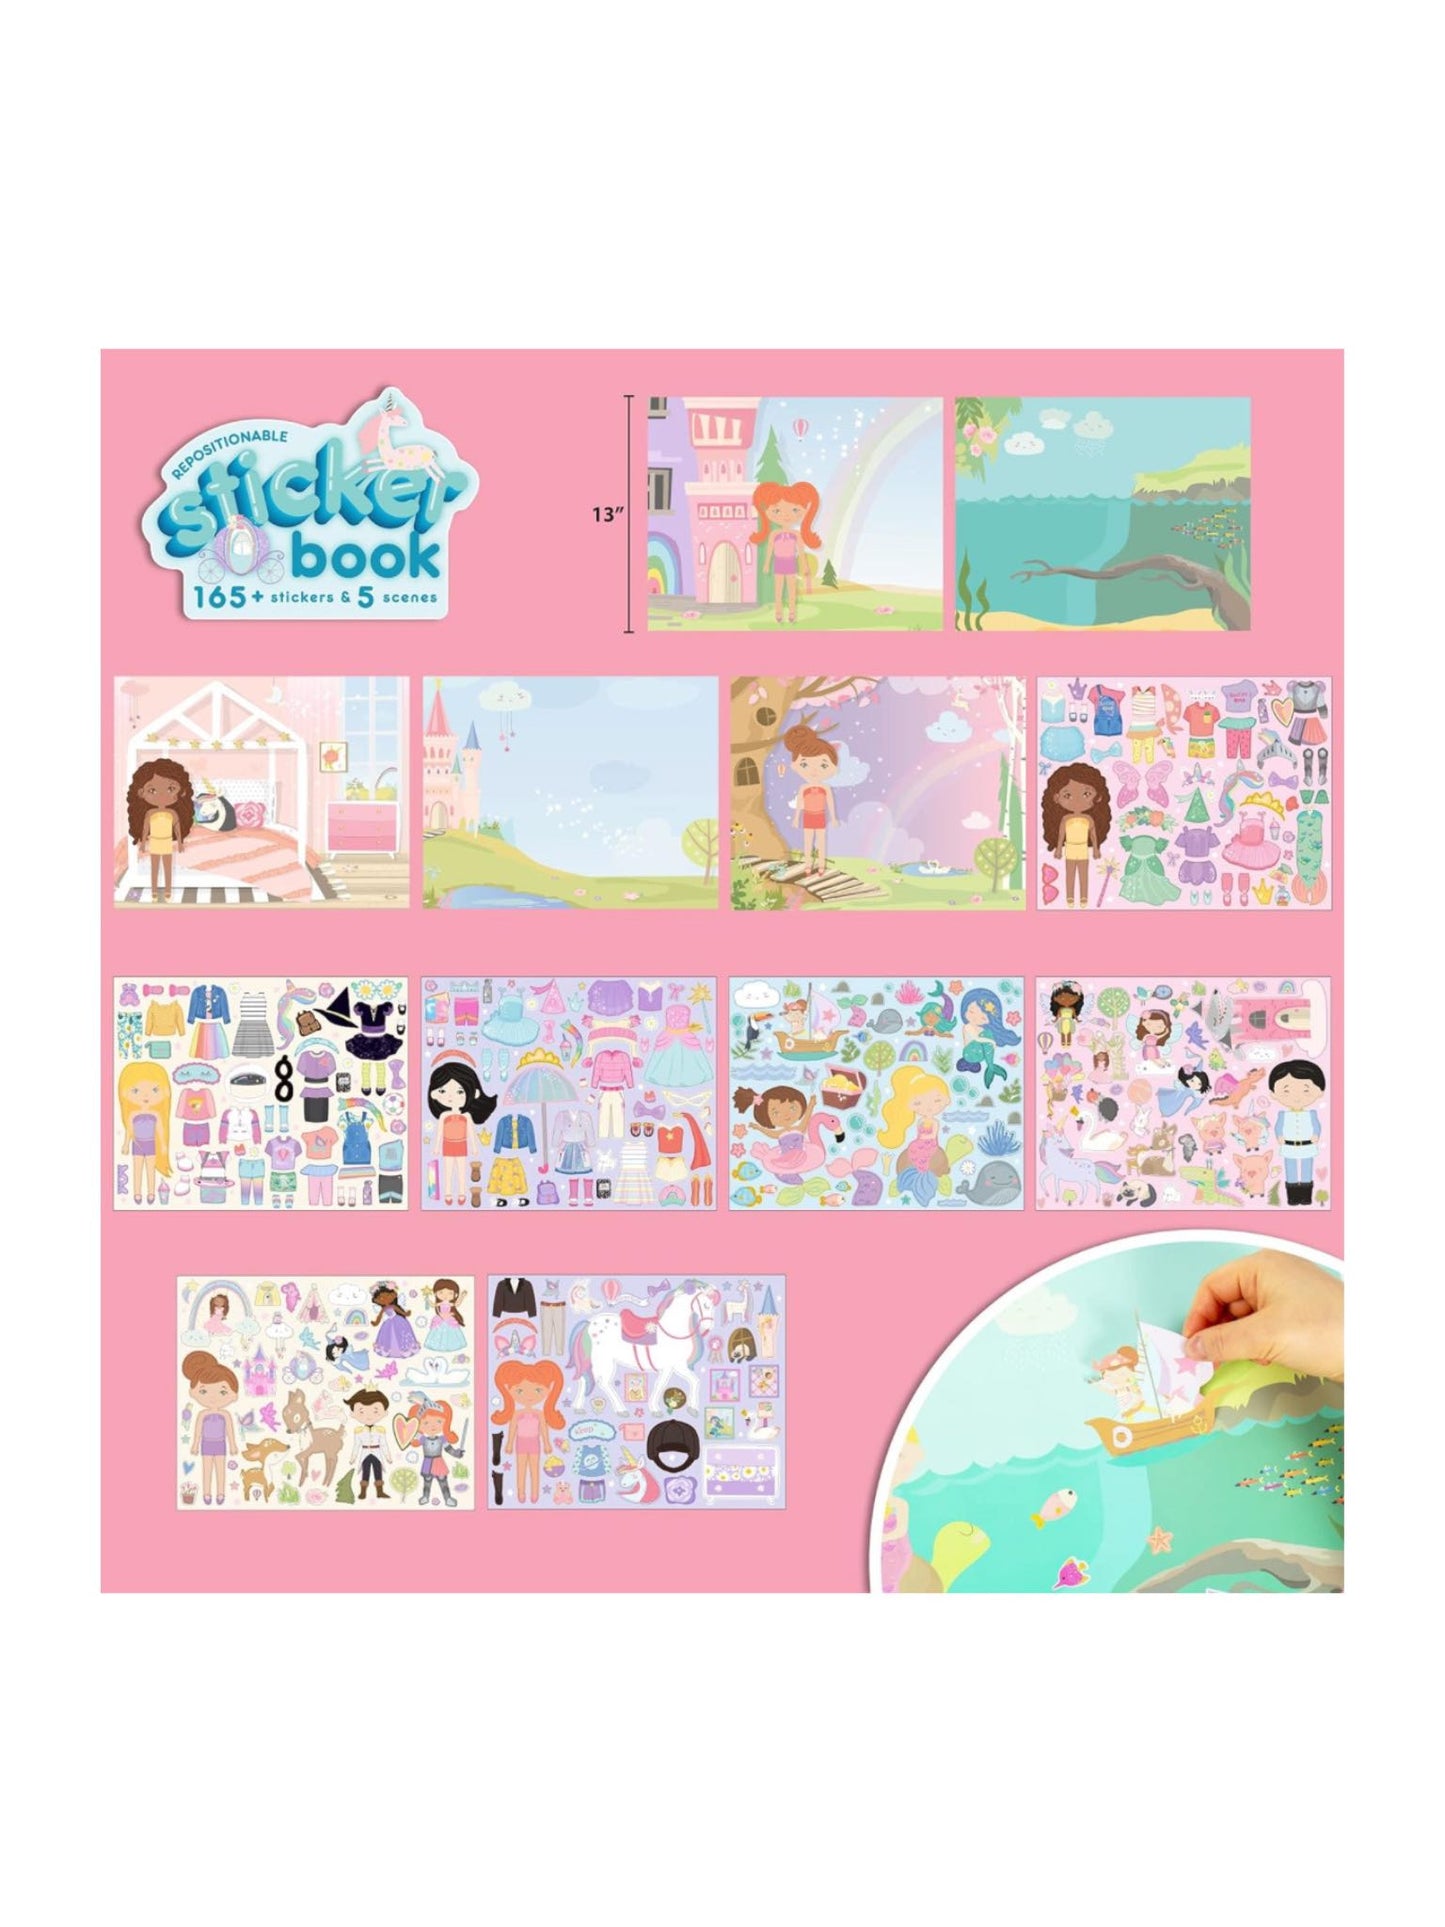 fairytale sticker book